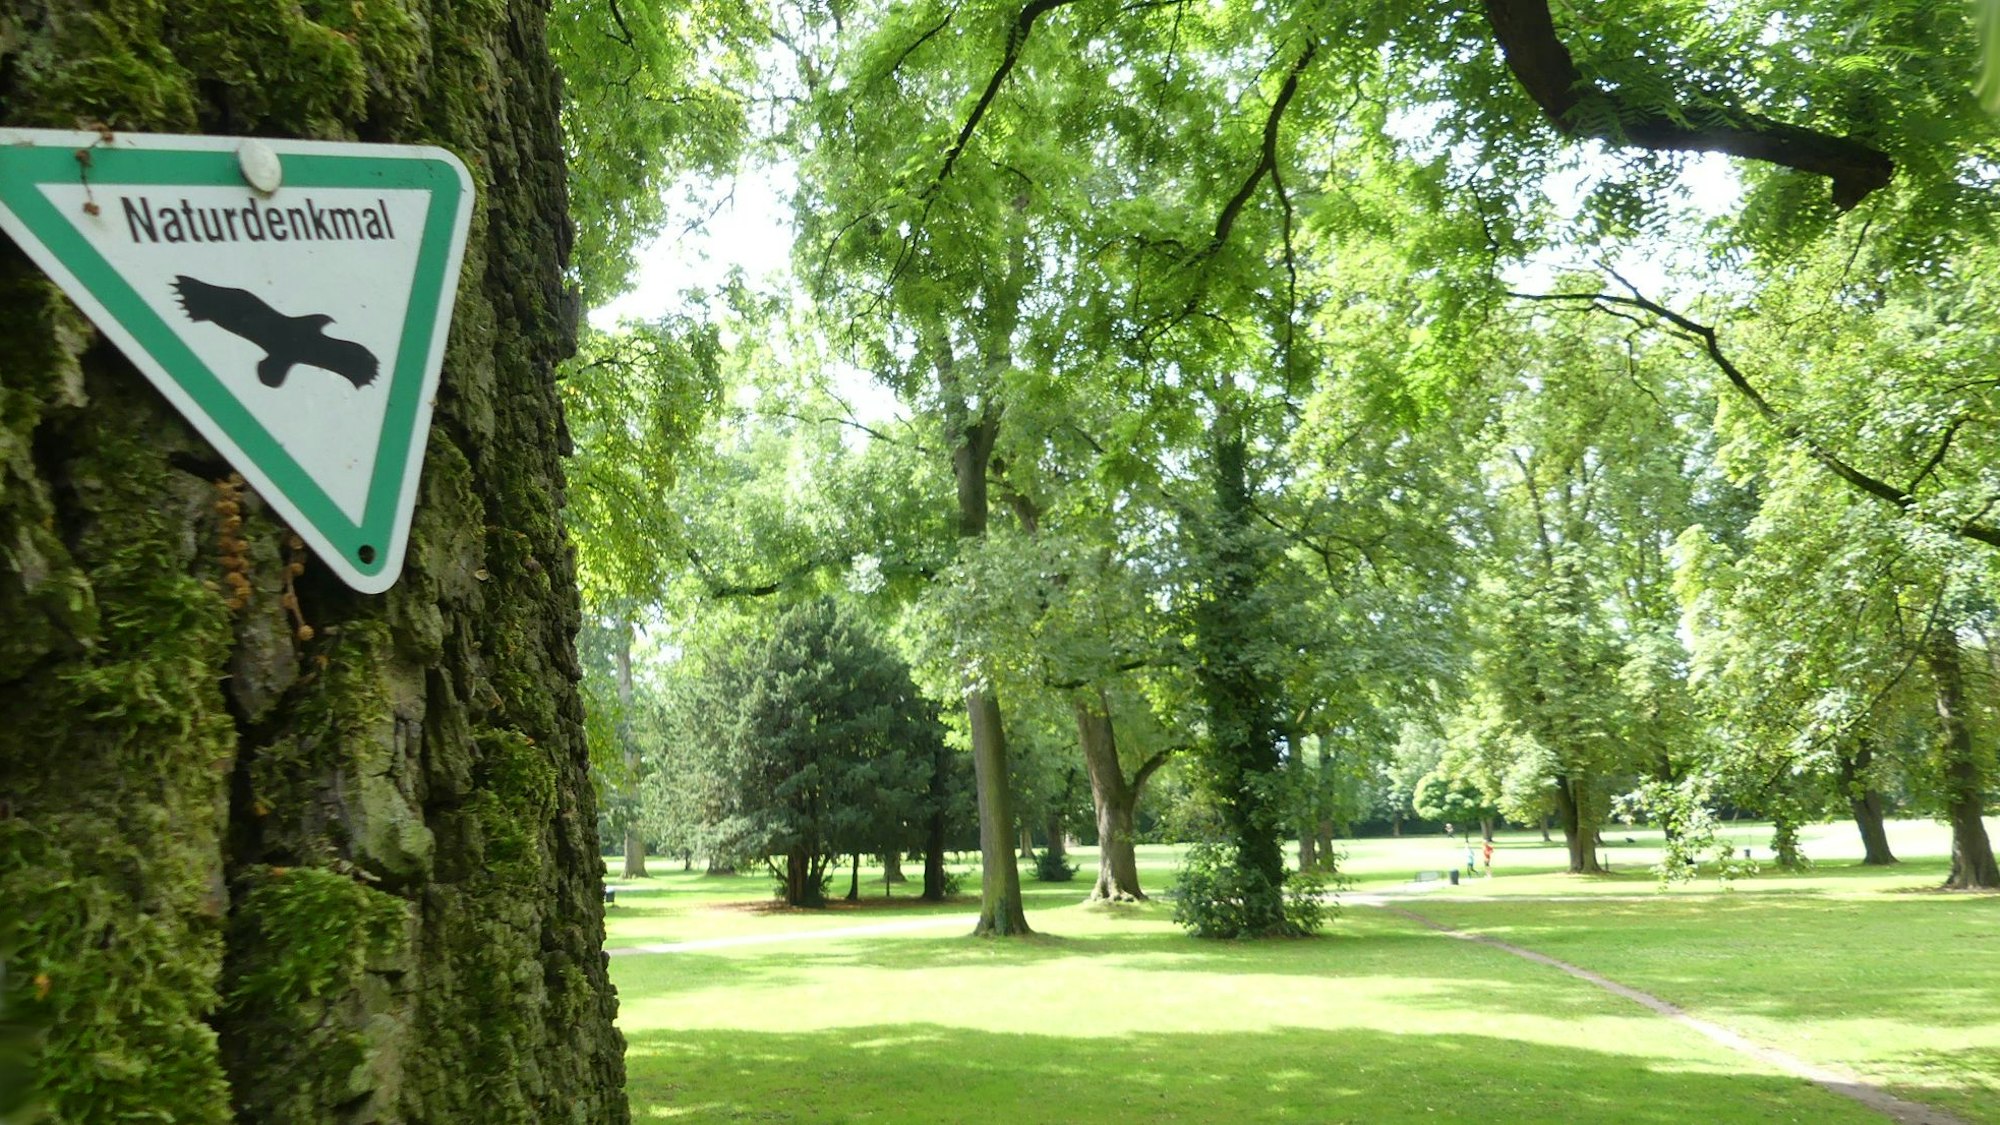 Blick in einen Park, im Vordergrund ist ein Baumstamm zu sehen, an dem ein Schild Naturdenkmal angebracht ist.